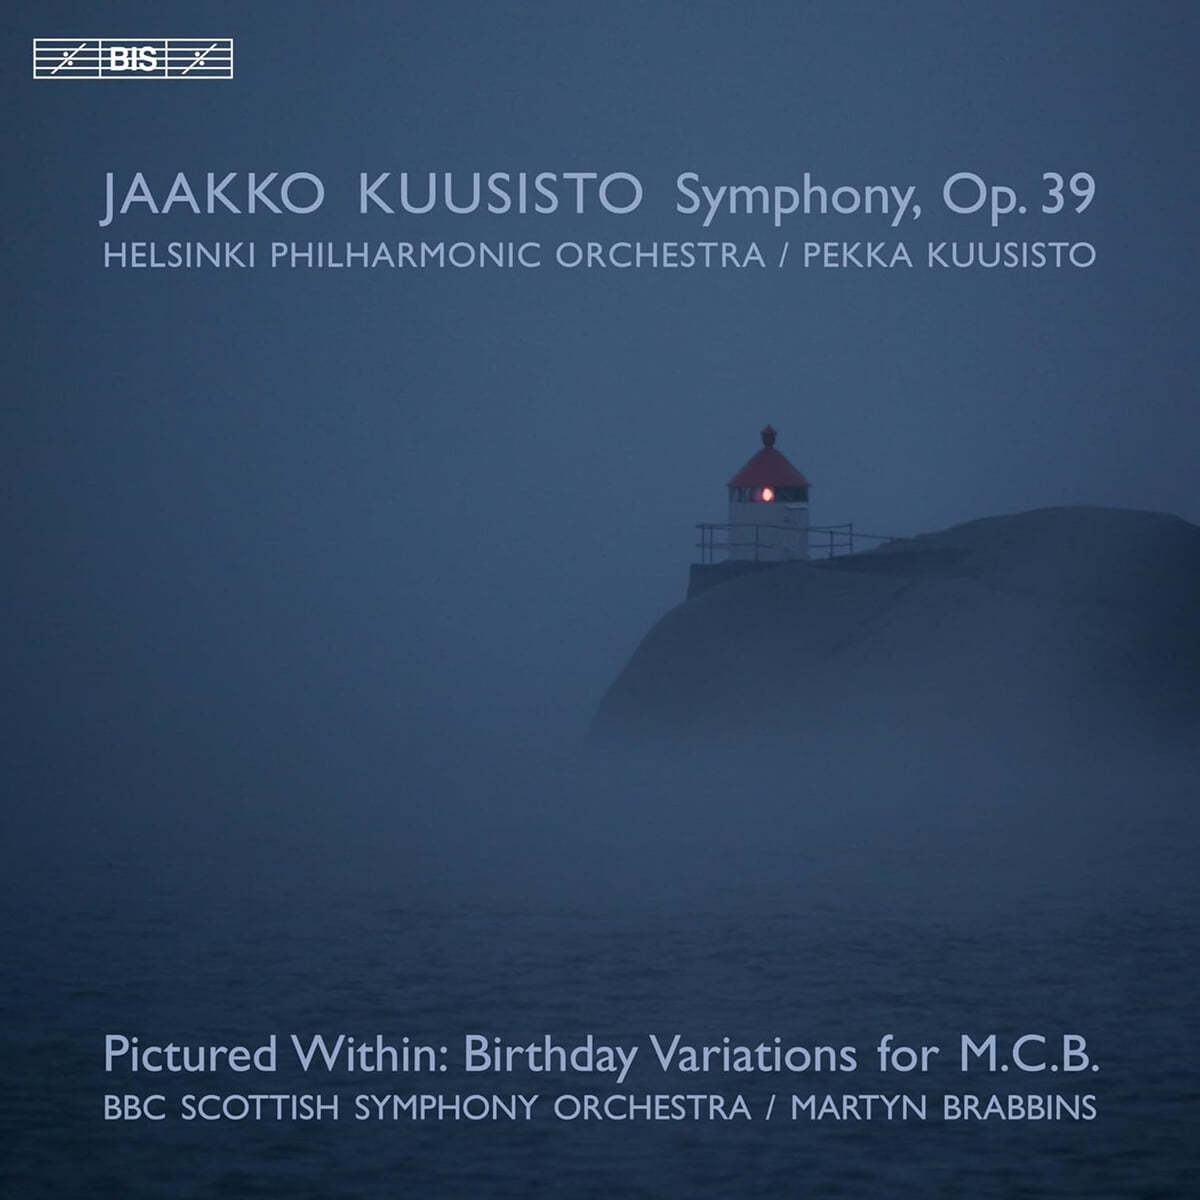 Martyn Brabbins 야코 쿠시스토: 교향곡 (Jaakko Kuusisto: Symphony Op.39)